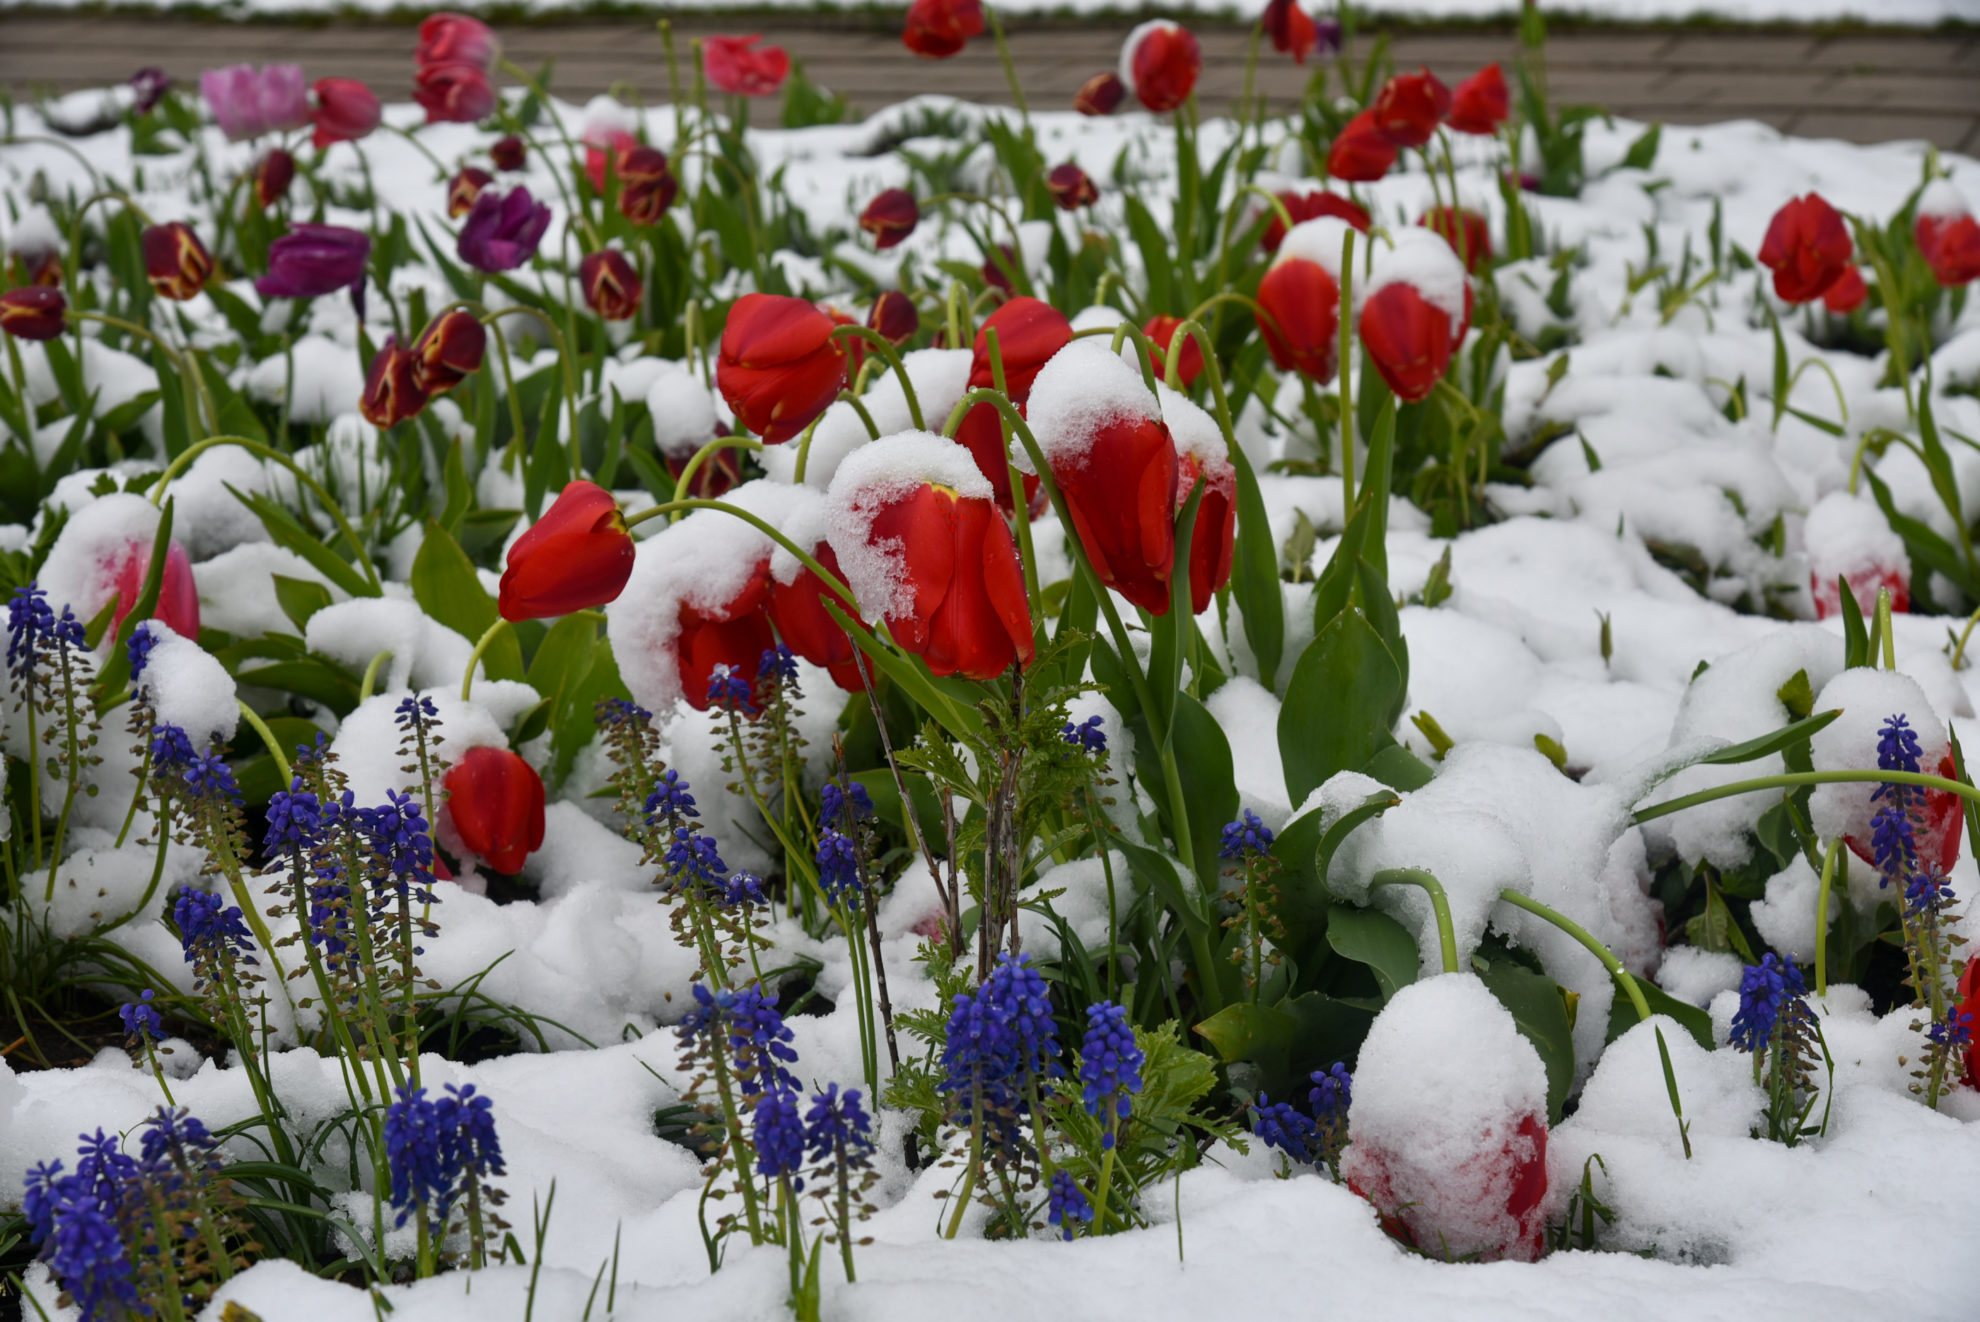 Gegužės viduryje Lietuvoje iškritęs sniegas uogų ir daržovių augintojams žalos nepadarė – jie sako, jog sniegas atgaivino ir prisotino išdžiūvusį dirvožemį.